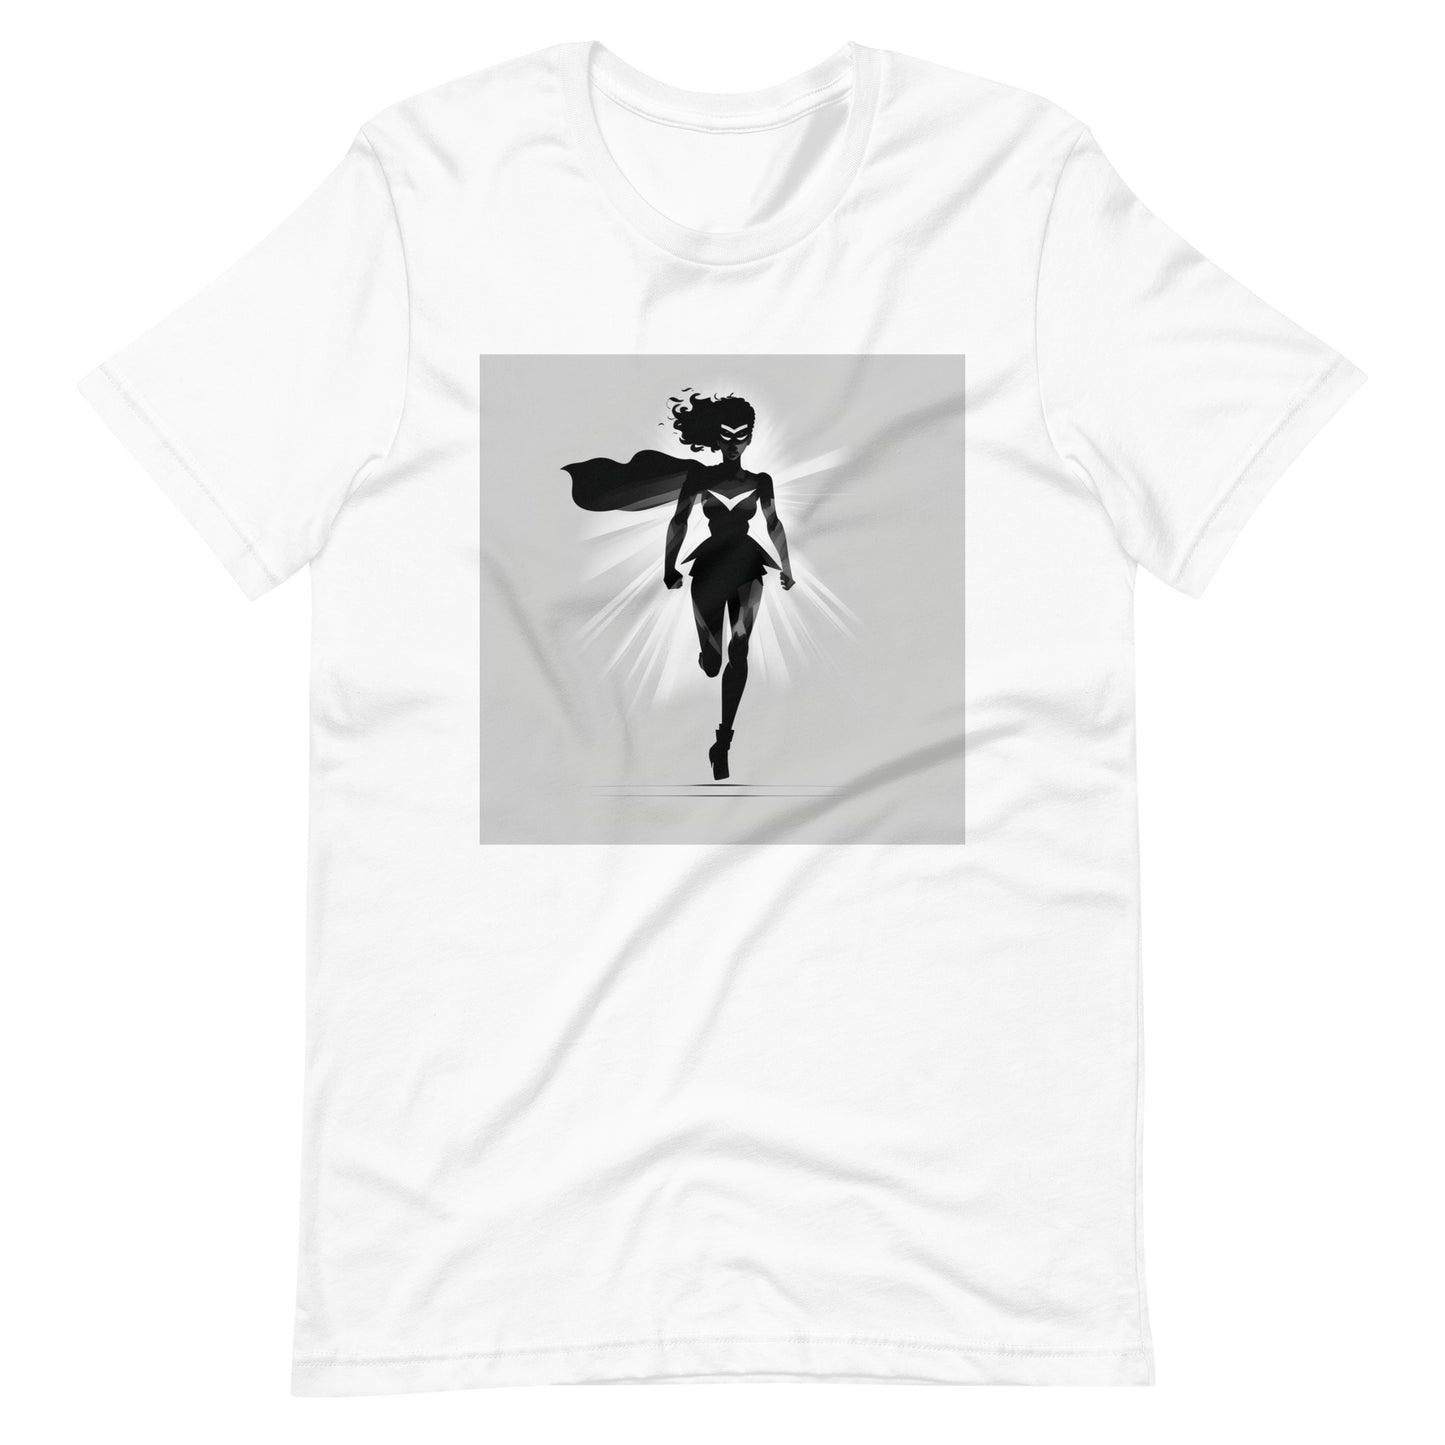 'She-ro' African design concept : Unisex Staple T-Shirt